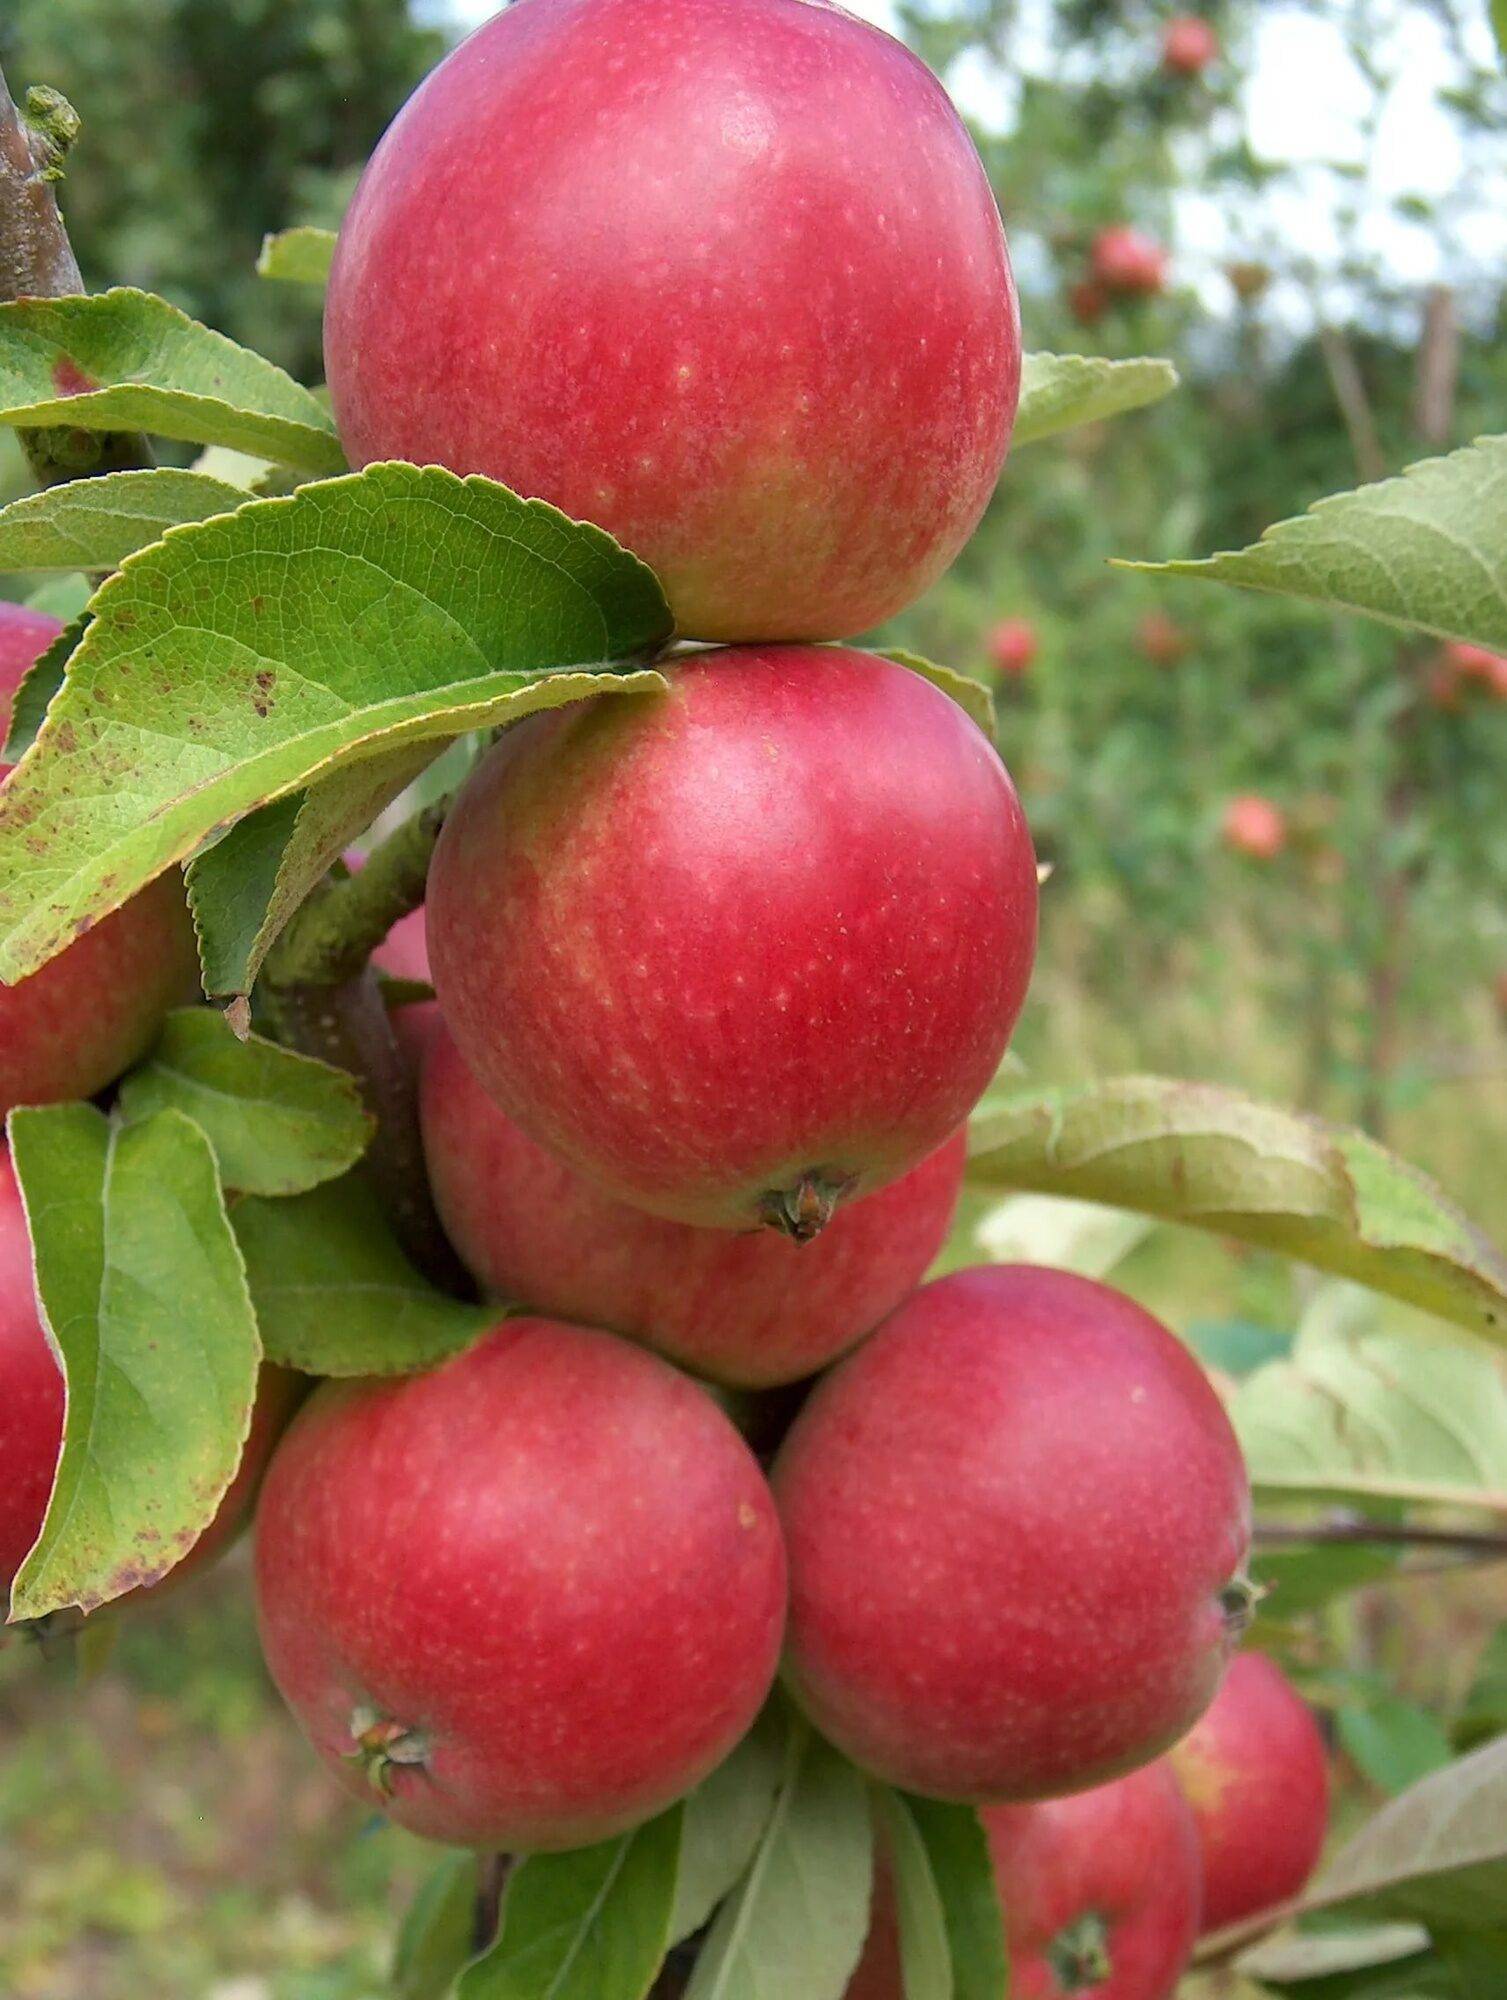 Яблоня сорта джонатан: особенности вида, преимущества и недостатки при выращивании